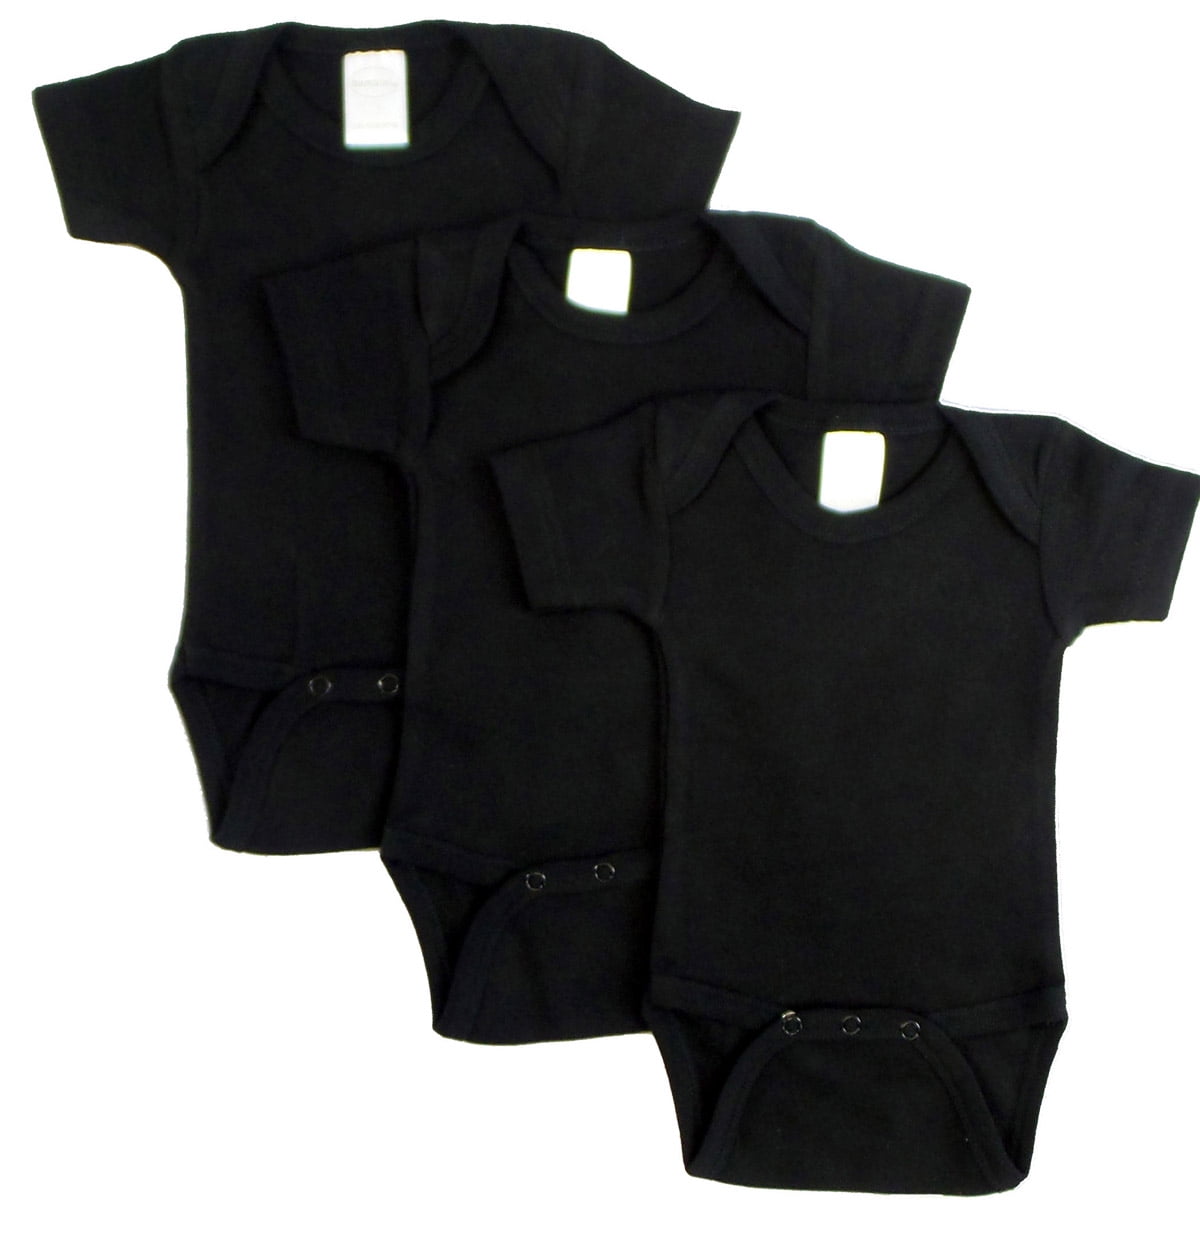 0010bl3-l Short Sleeve - Black, Large - Pack Of 3